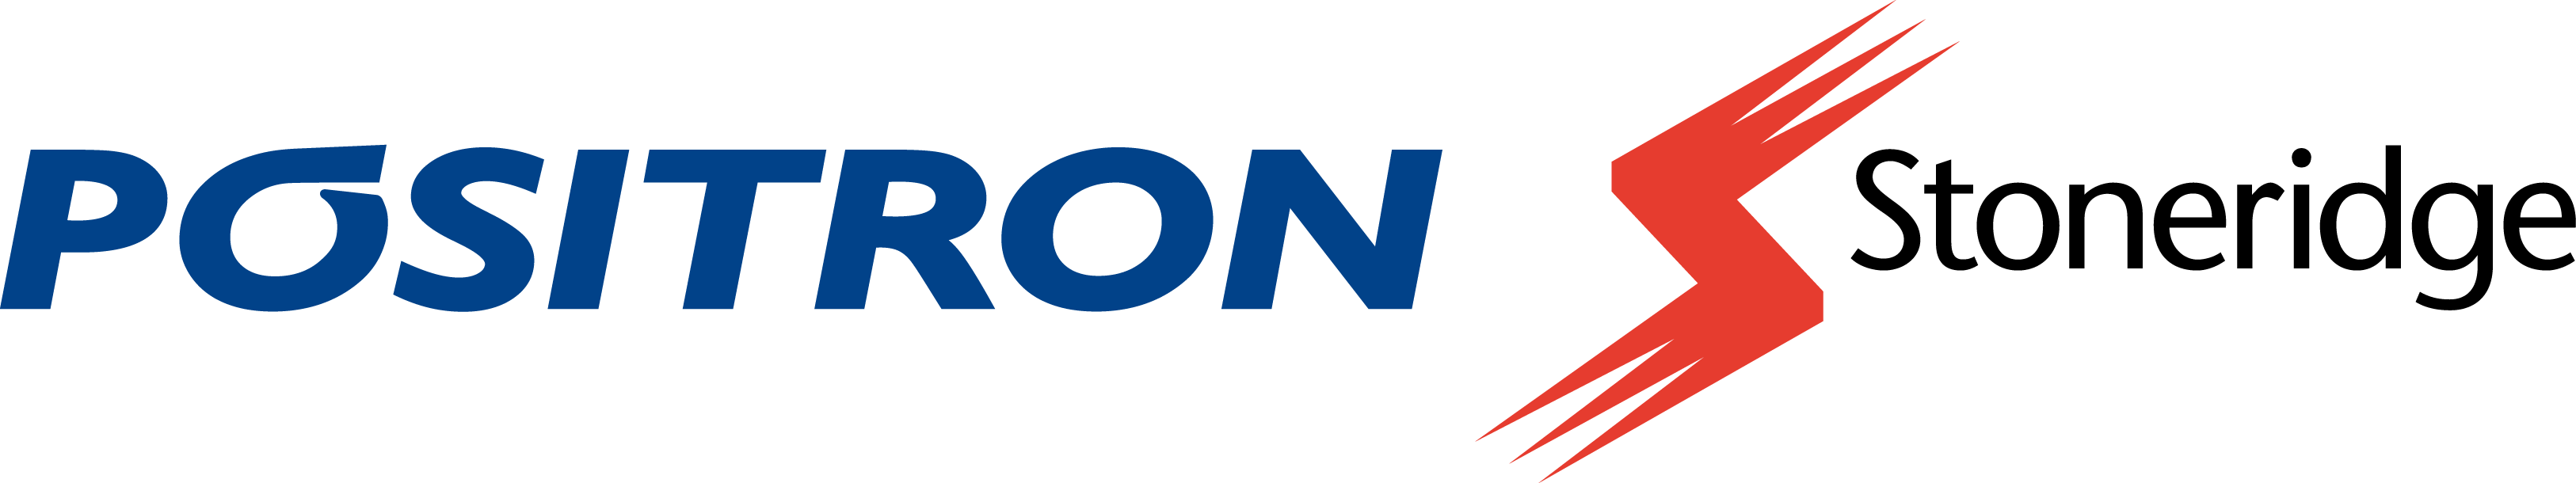 Logo Positron